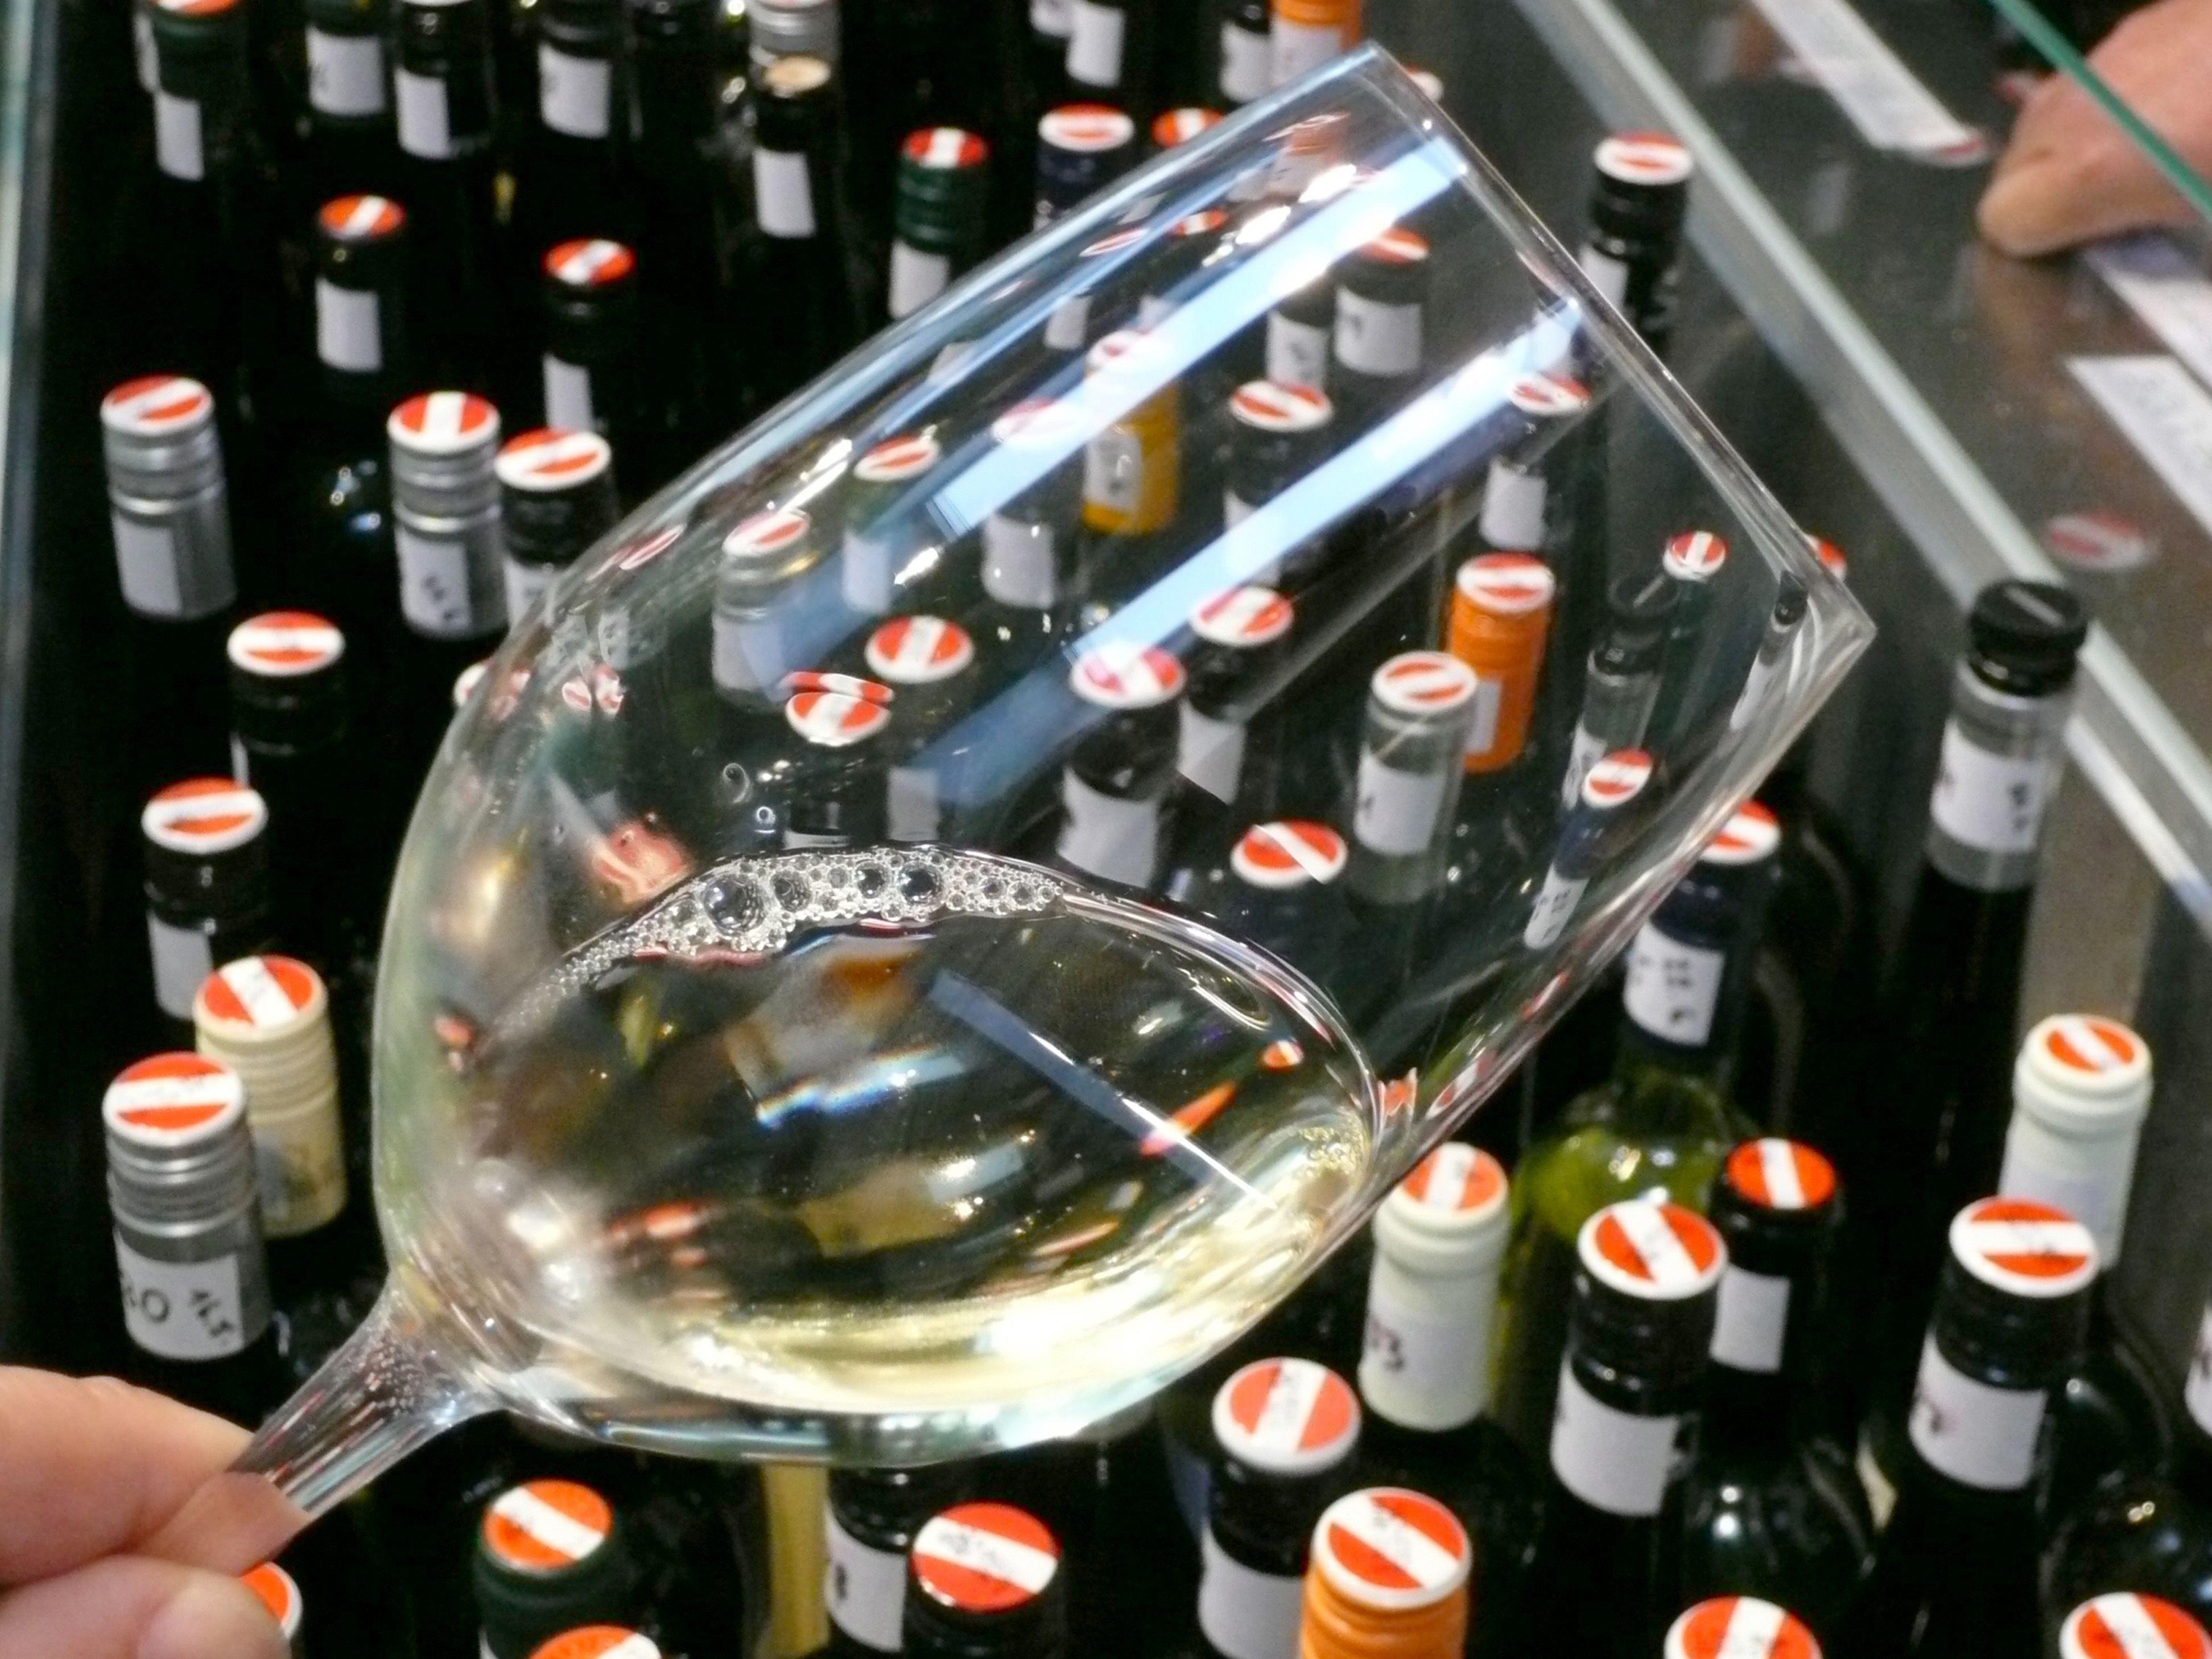 Viele feine Weine gibt's beim Weinfest am Spittelberg am 15. und 16. Juni zu verkosten